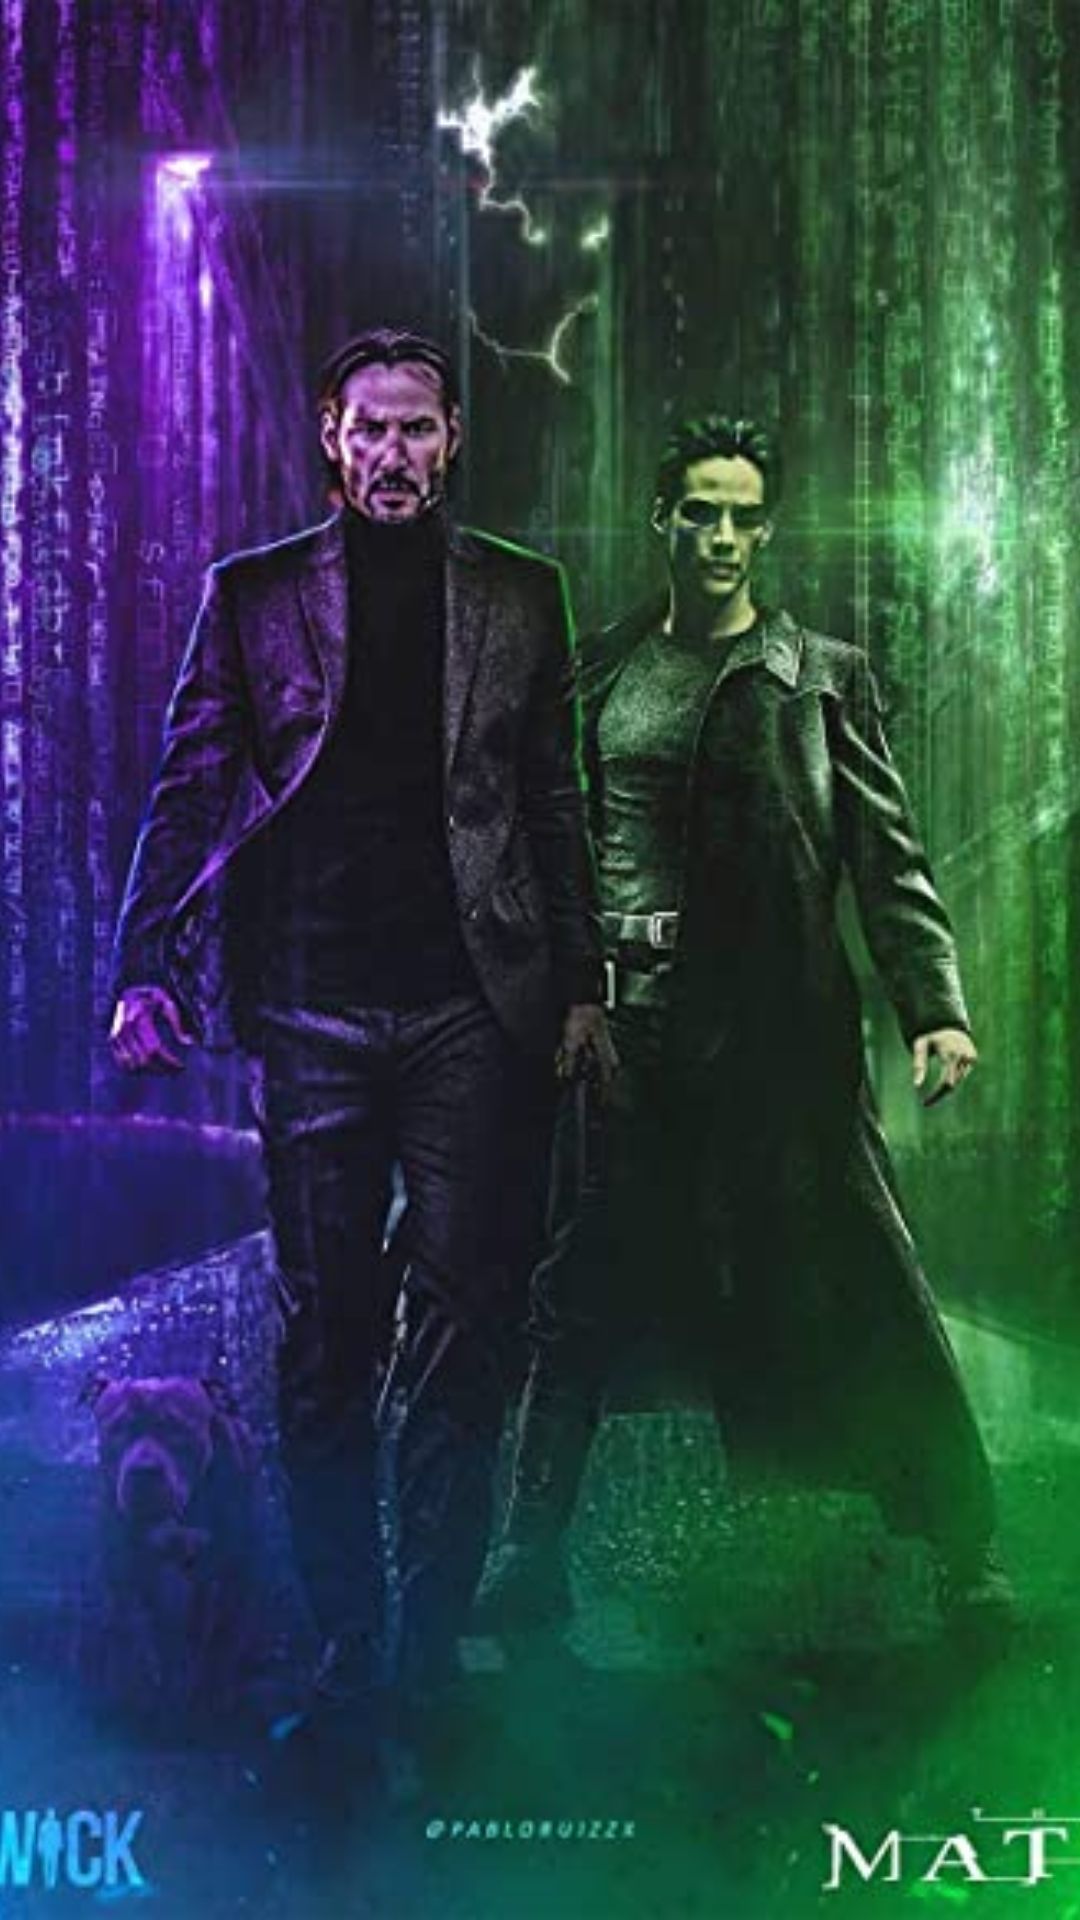 Best The Matrix 4 Wallpaper [ 2021]